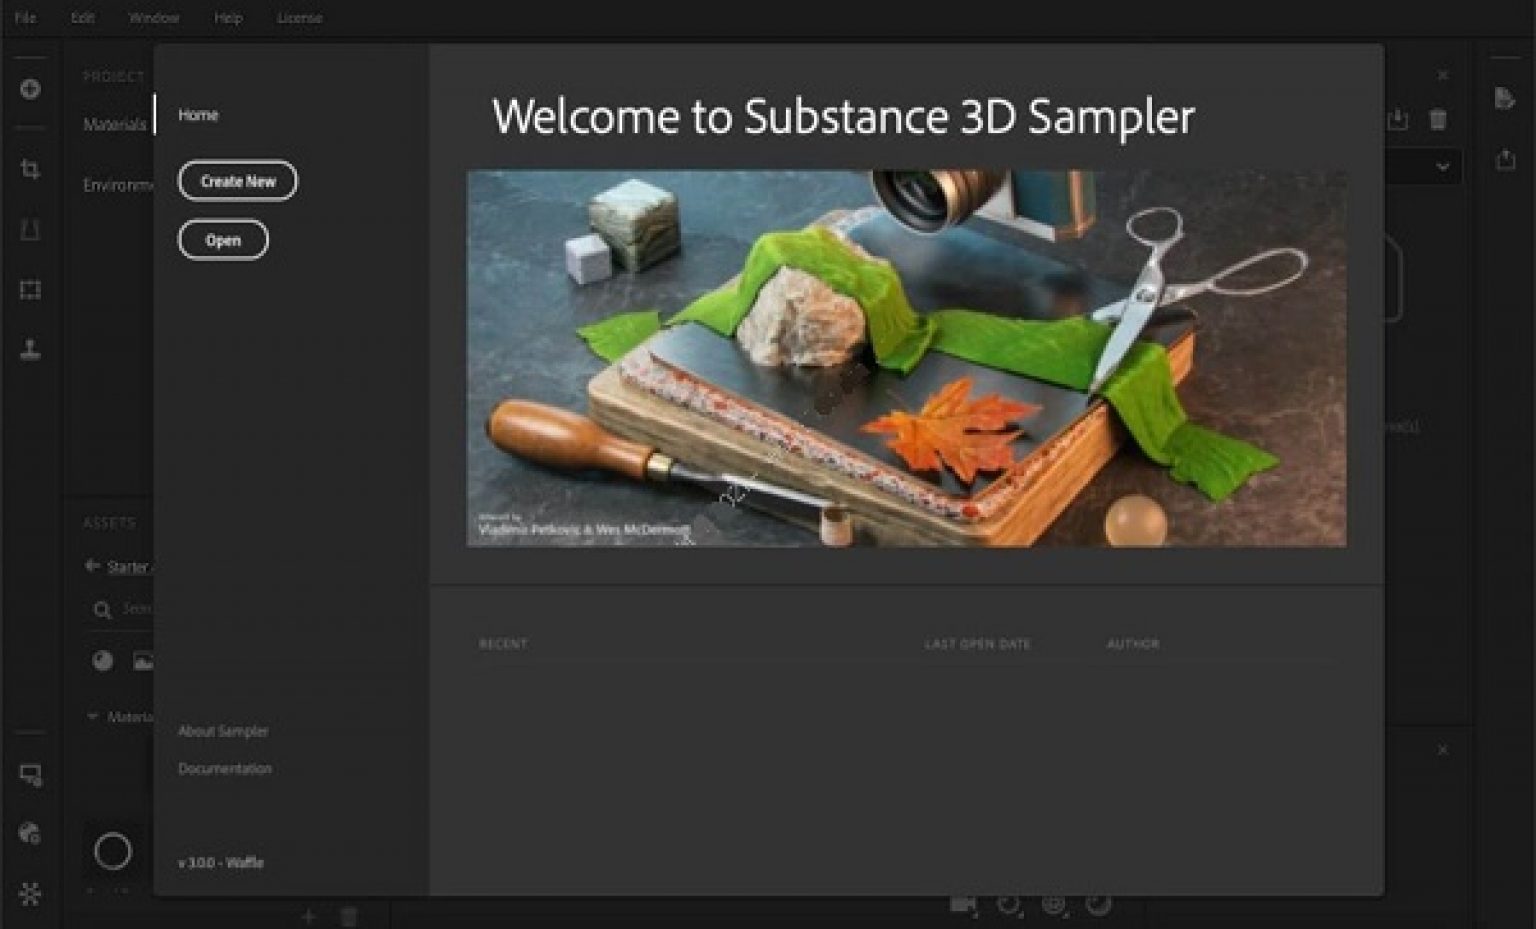 Adobe Substance 3D Sampler 4.1.2.3298 download the new version